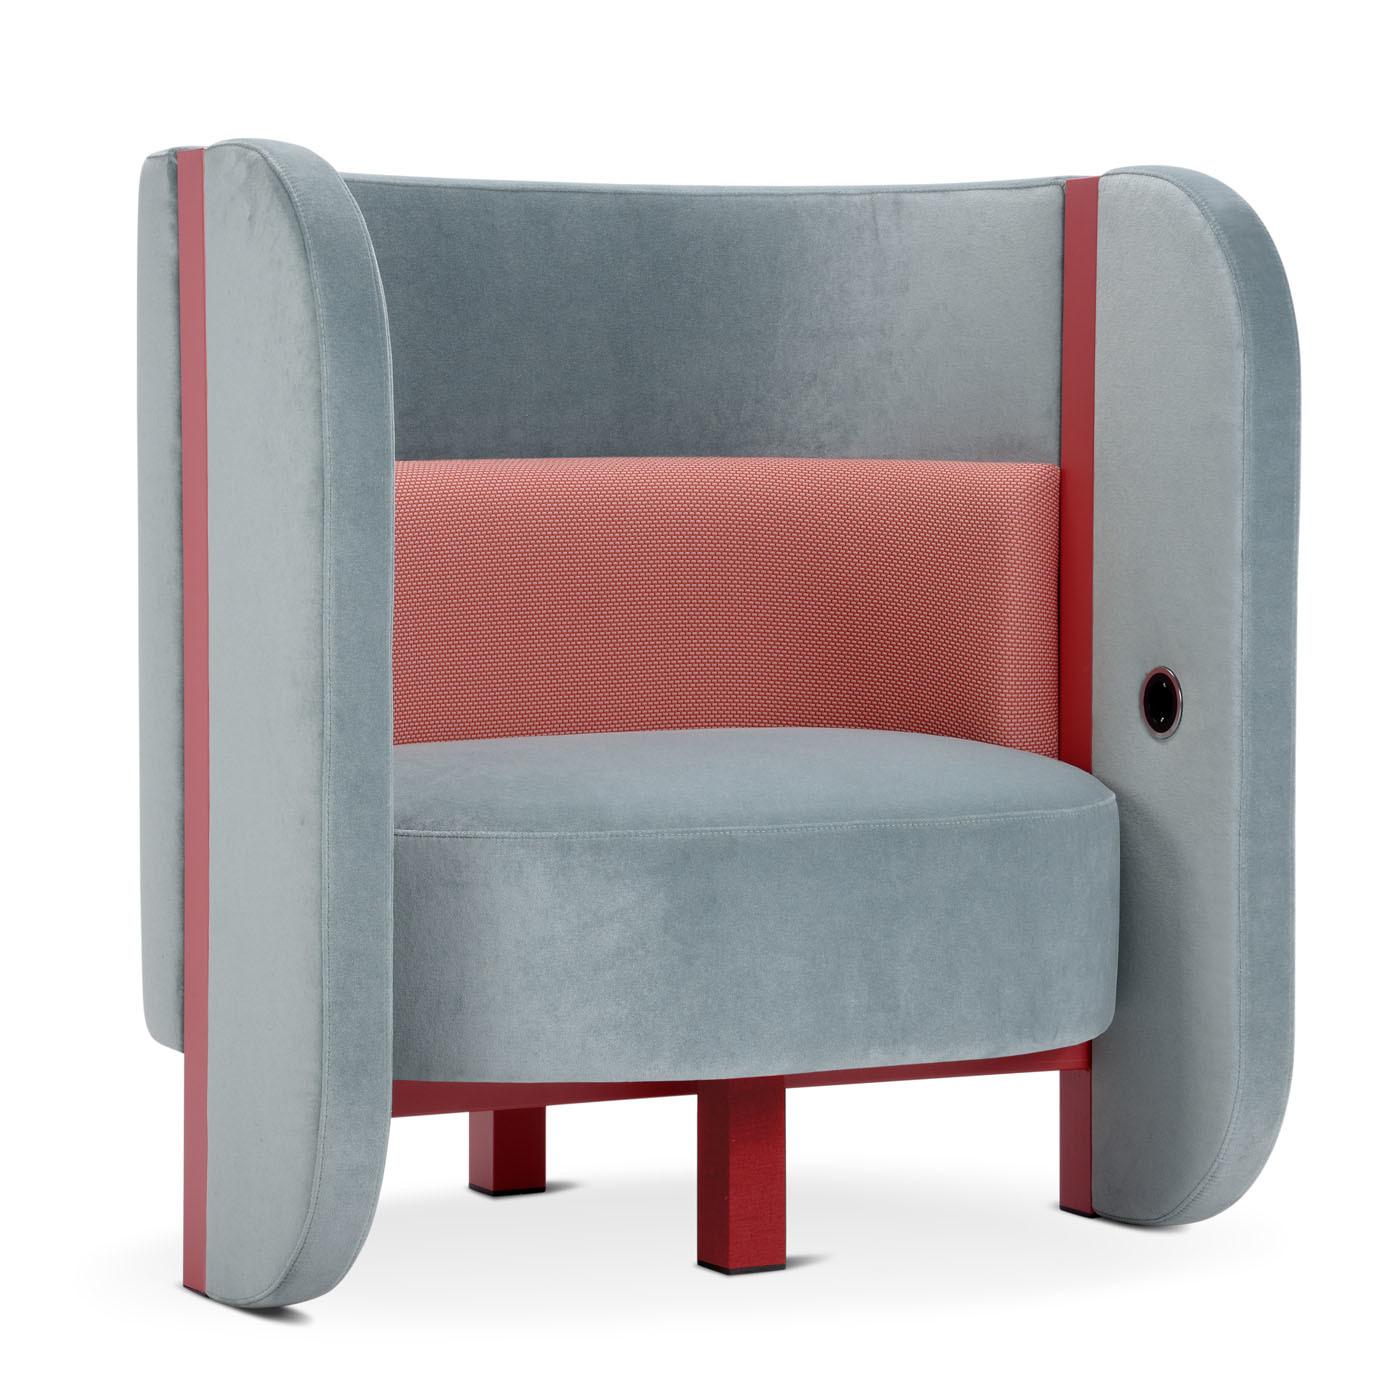 Le fauteuil en mousse polyuréthane indéformable de différentes densités offre un confort et une détente totale grâce notamment aux ports USB pour recharger vos appareils mobiles. La forme est caractérisée par deux ailes qui enferment et protègent,